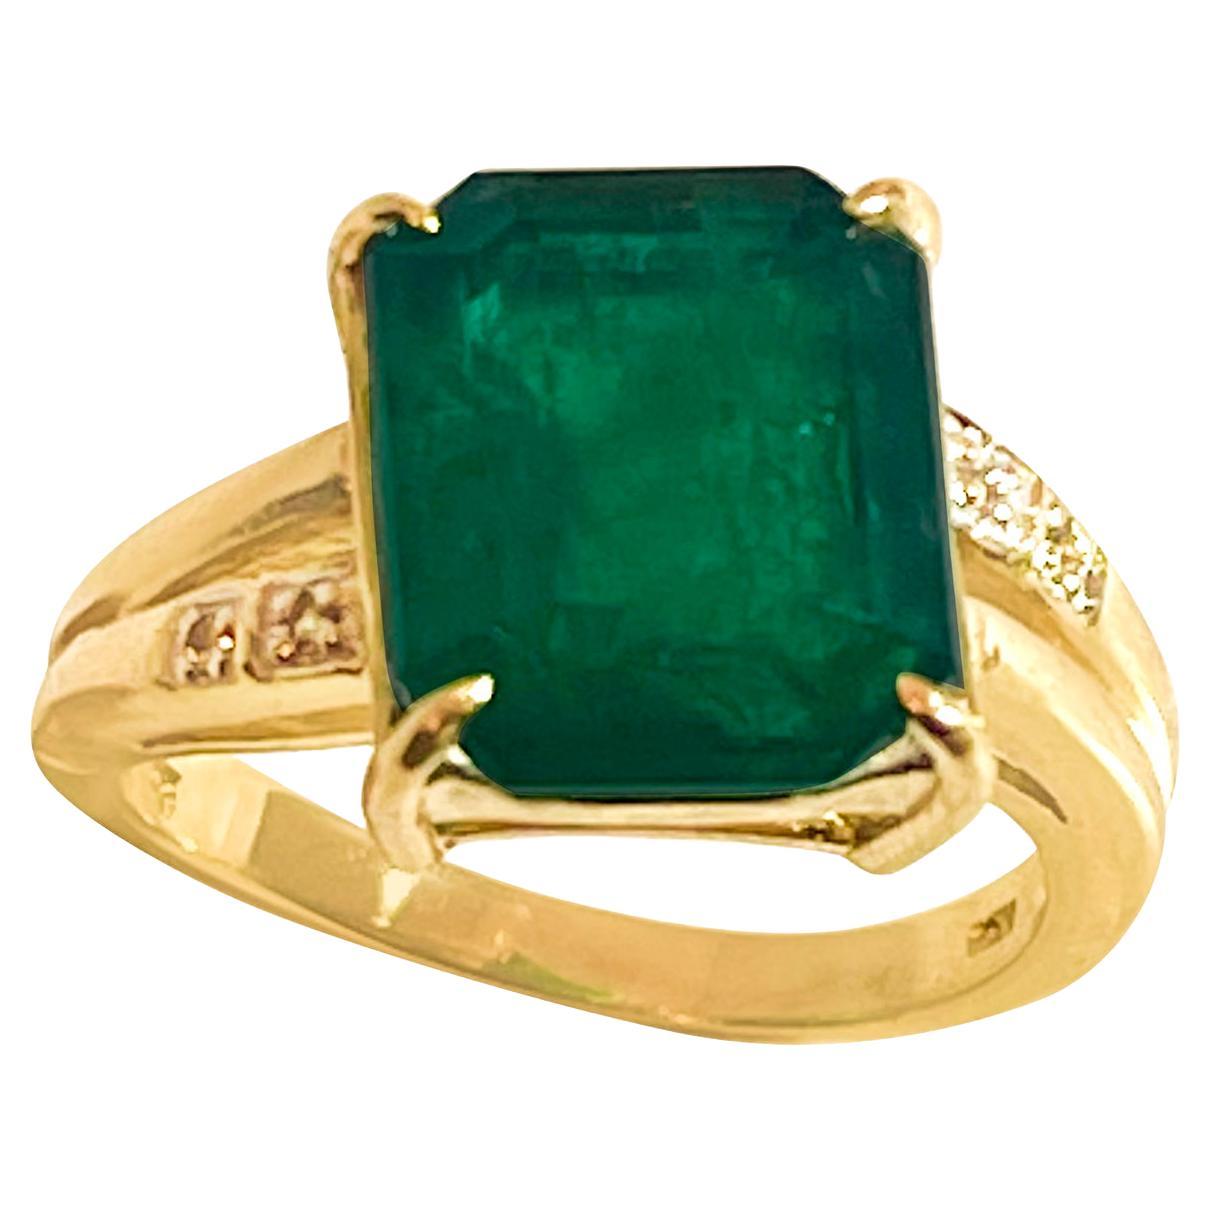 4.5 Carat Natural Emerald Cut Emerald Ring 14 Karat Yellow Gold